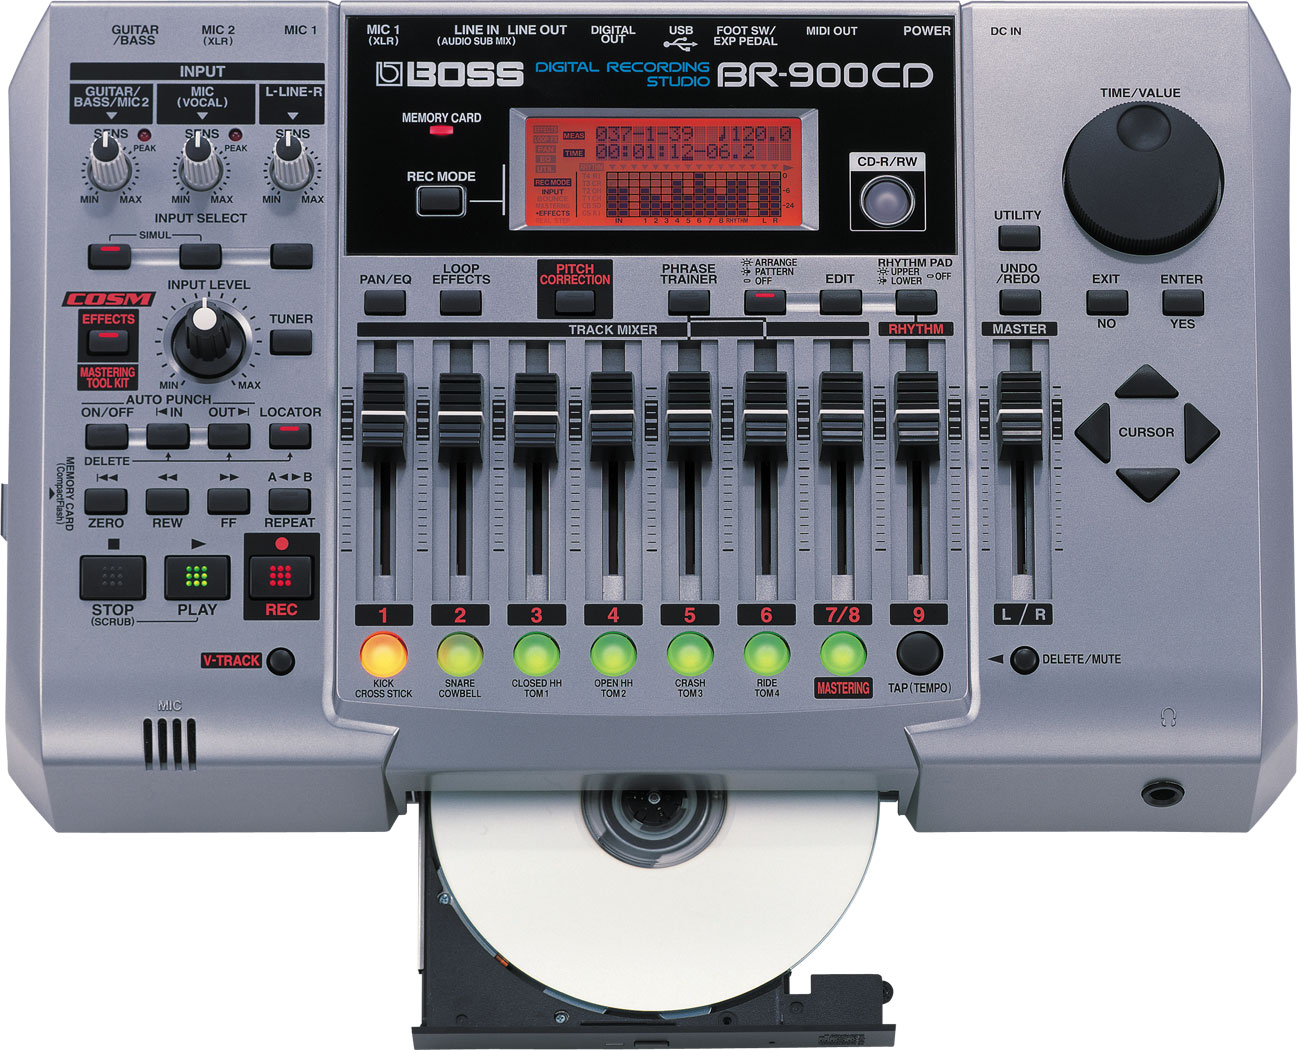 BR-900CD | Digital Recorder - BOSS